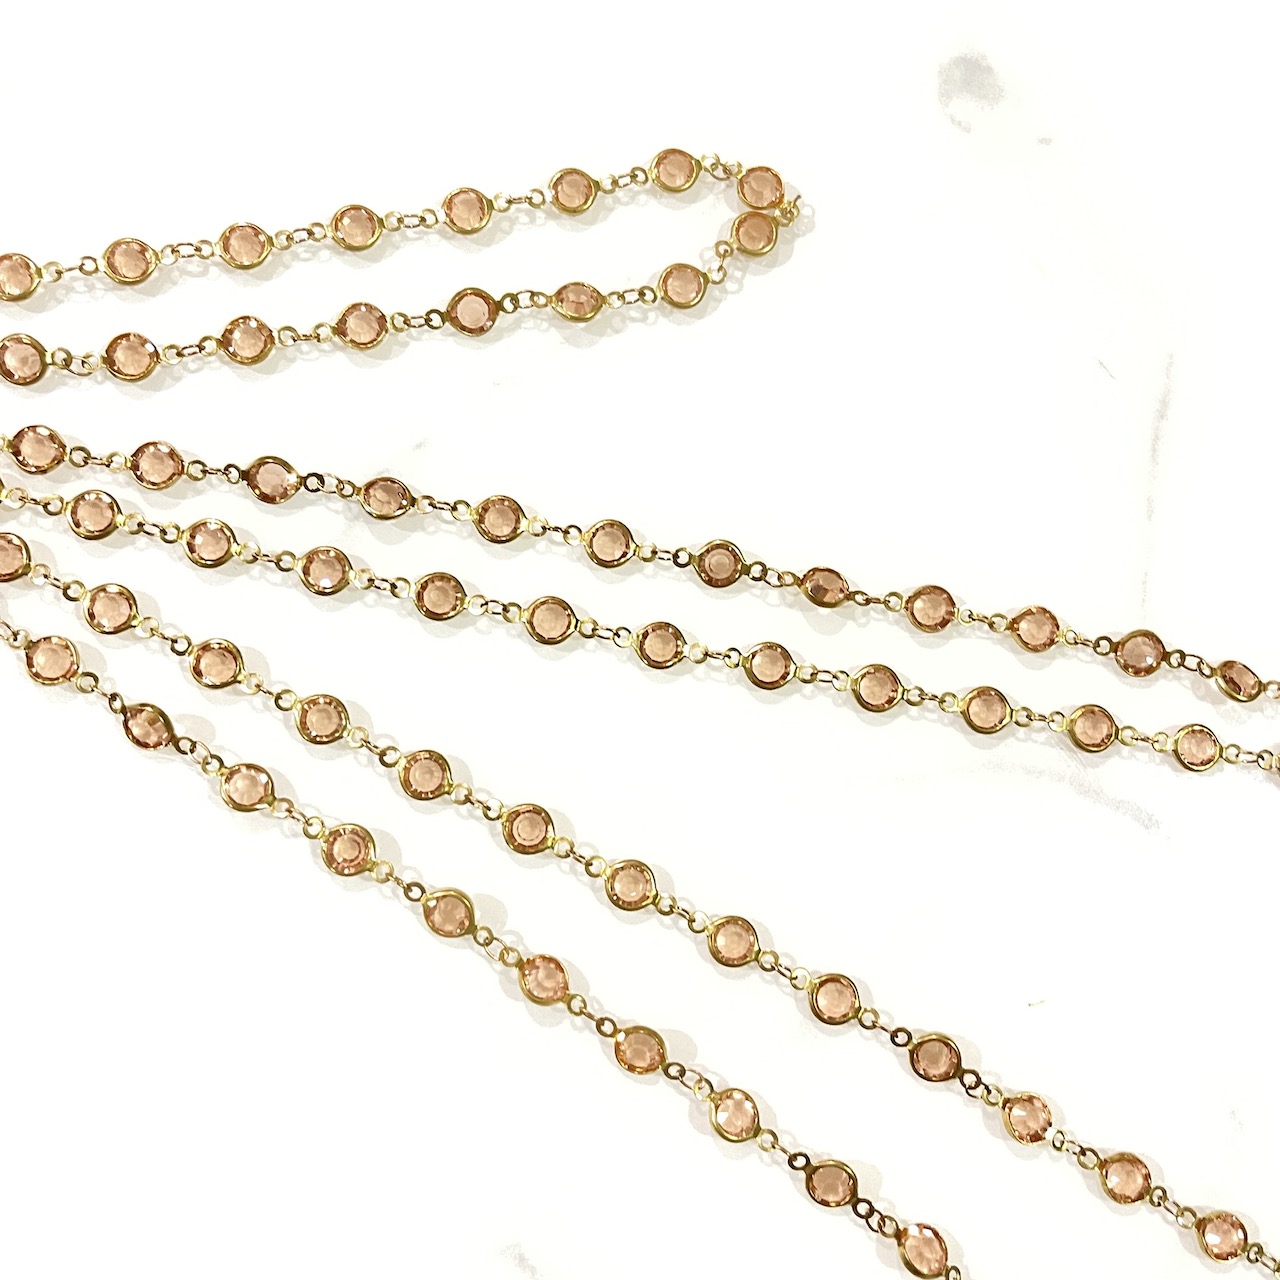 Vintage Jewelry สร้อย สังวาลย์ ชุดไทย ผู้หญิง เพชรพลอย เครื่องประดับ ทอง